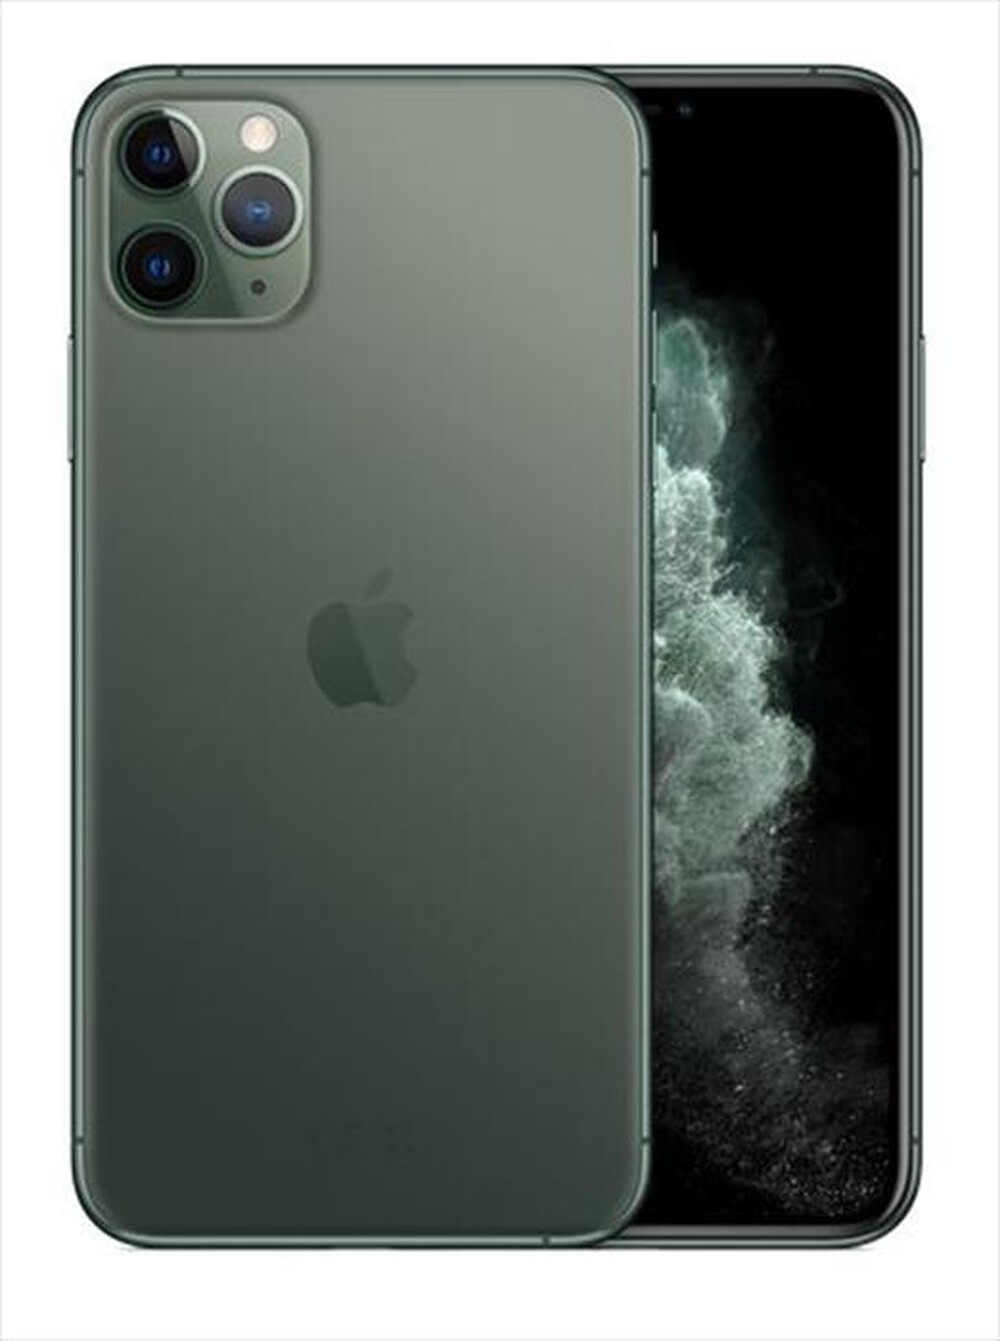 "APPLE - iPhone 11 Pro Max 64GB OTTIMO BATTERIA NUOVA-Verde Notte"